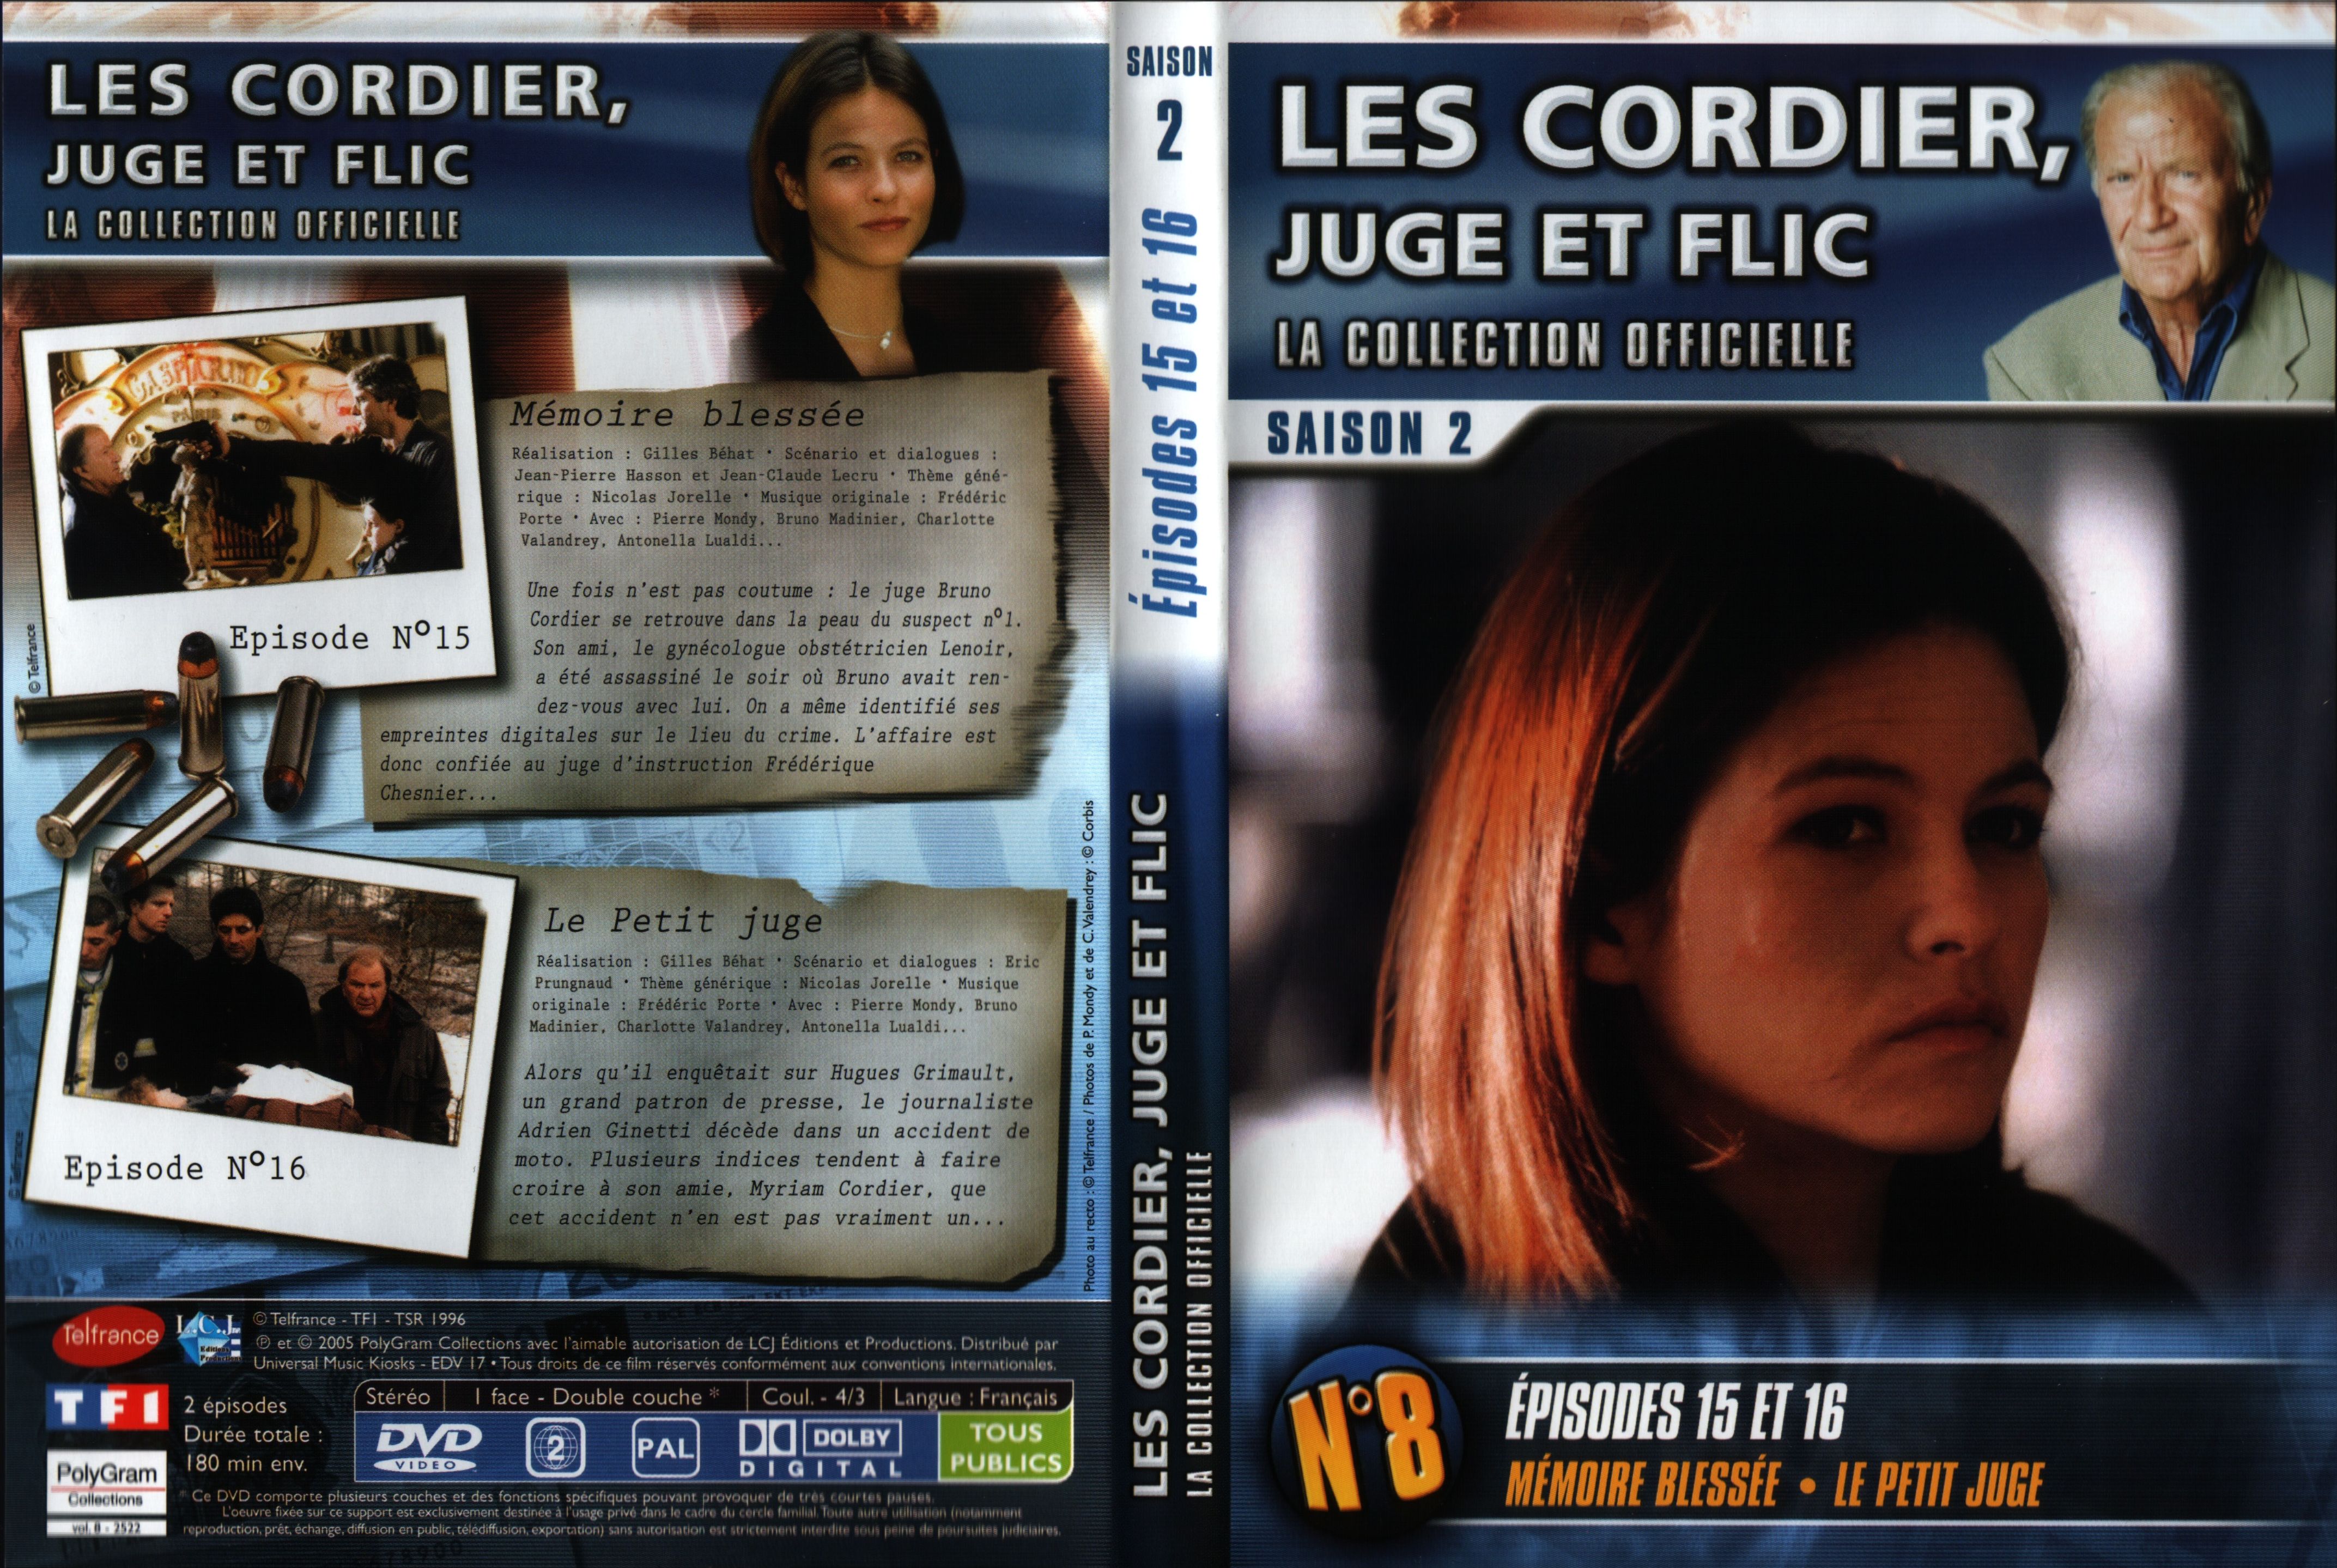 Jaquette DVD Les cordier juge et flic Saison 2 vol 8